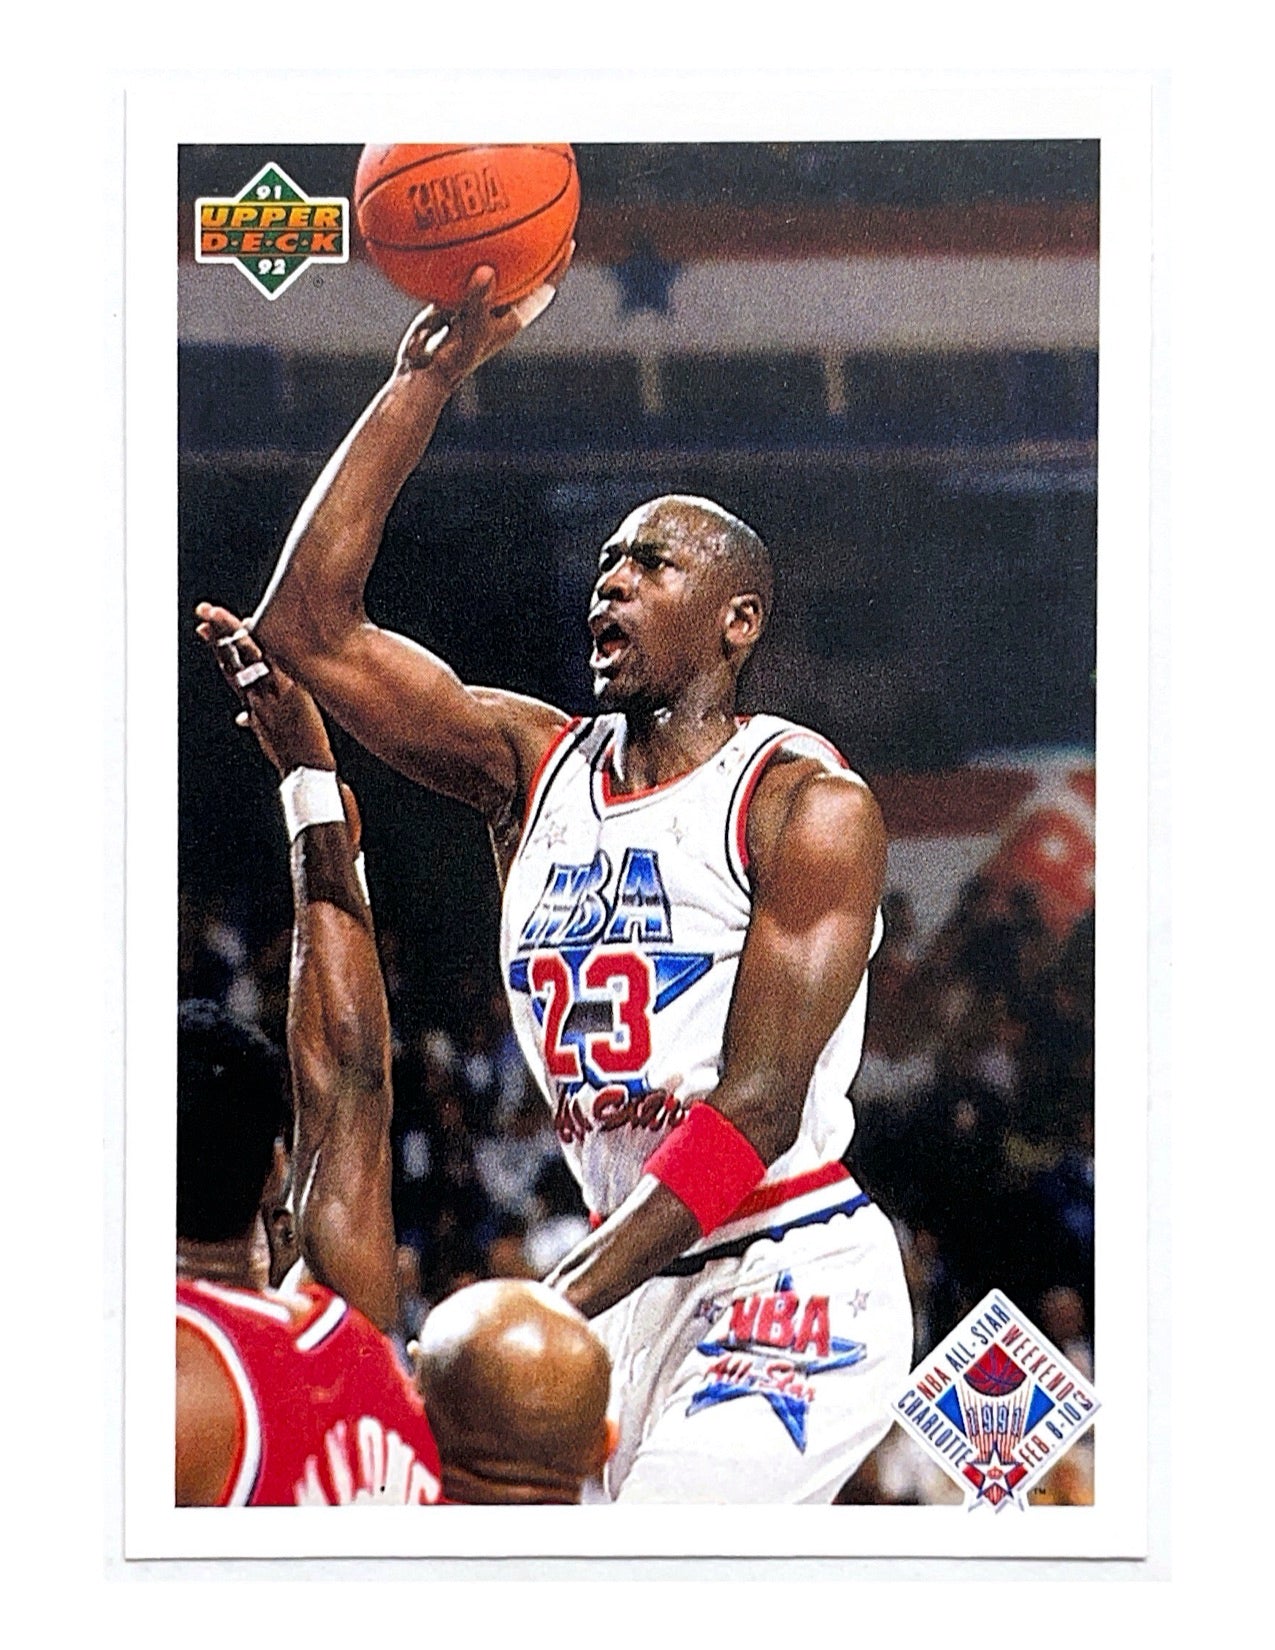 Michael Jordan 1991-92 Upper Deck All-Star Checklist #48